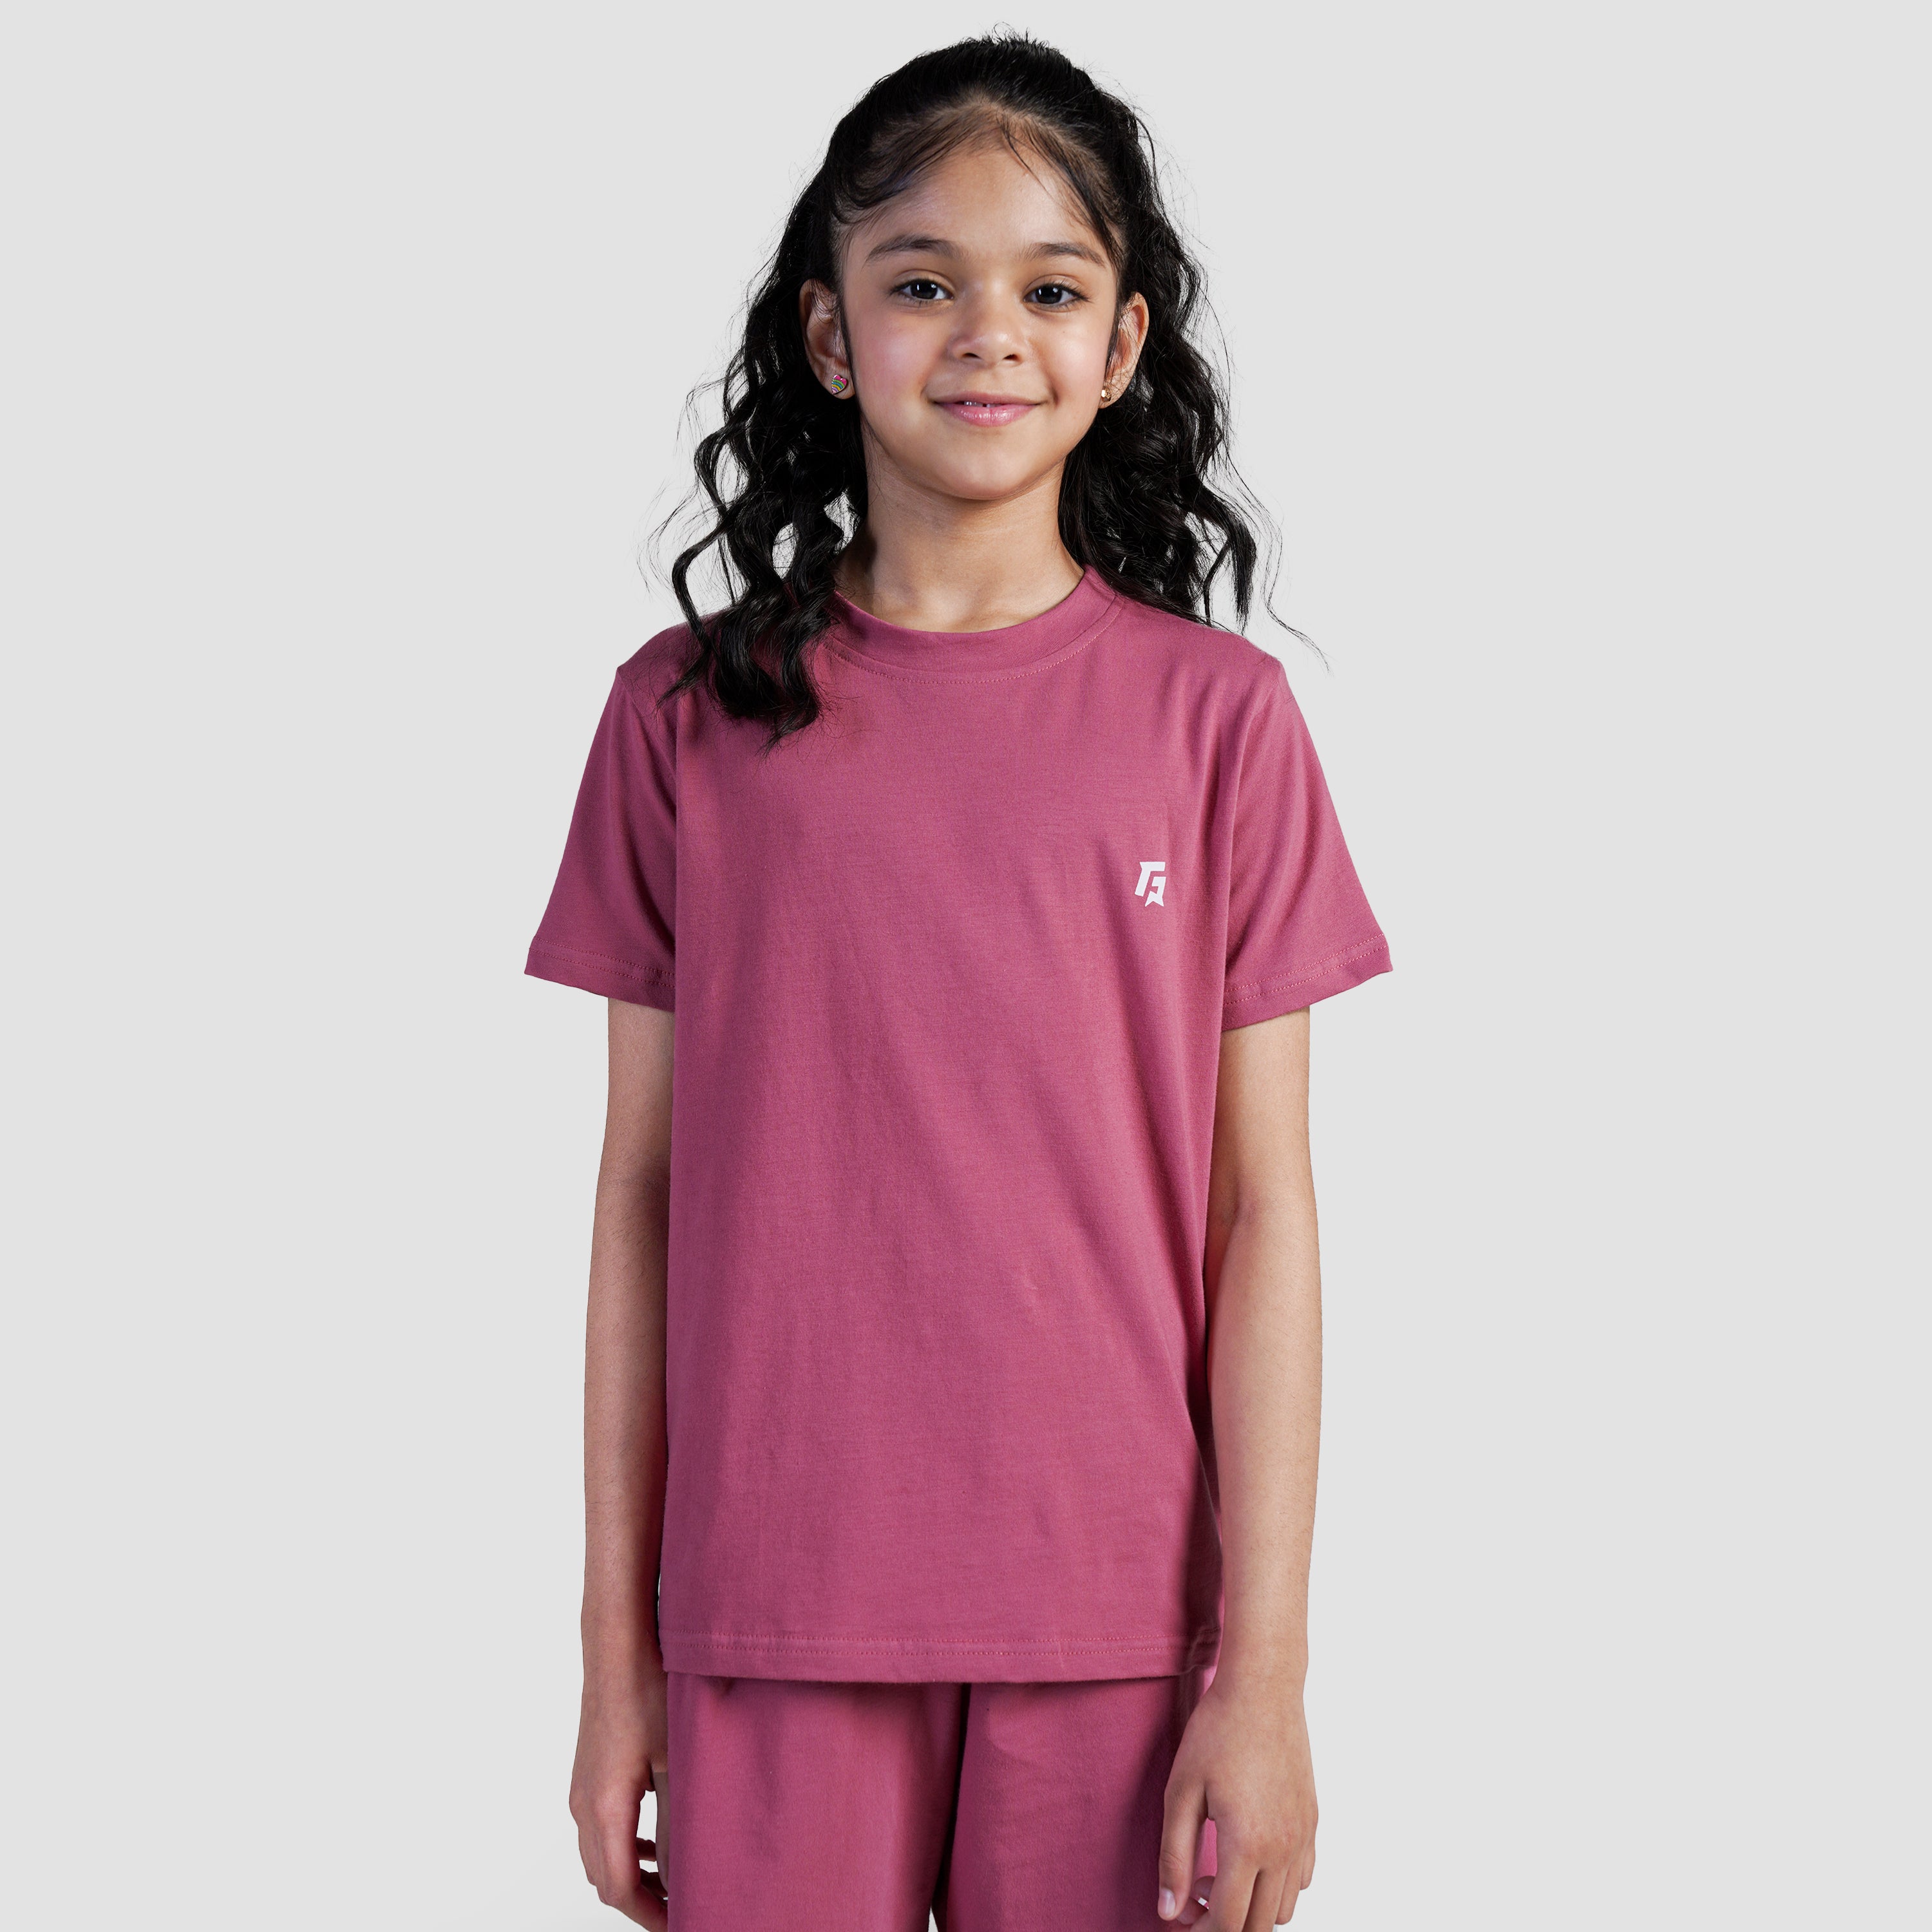 Co-Groove T-Shirt (Light Pink)